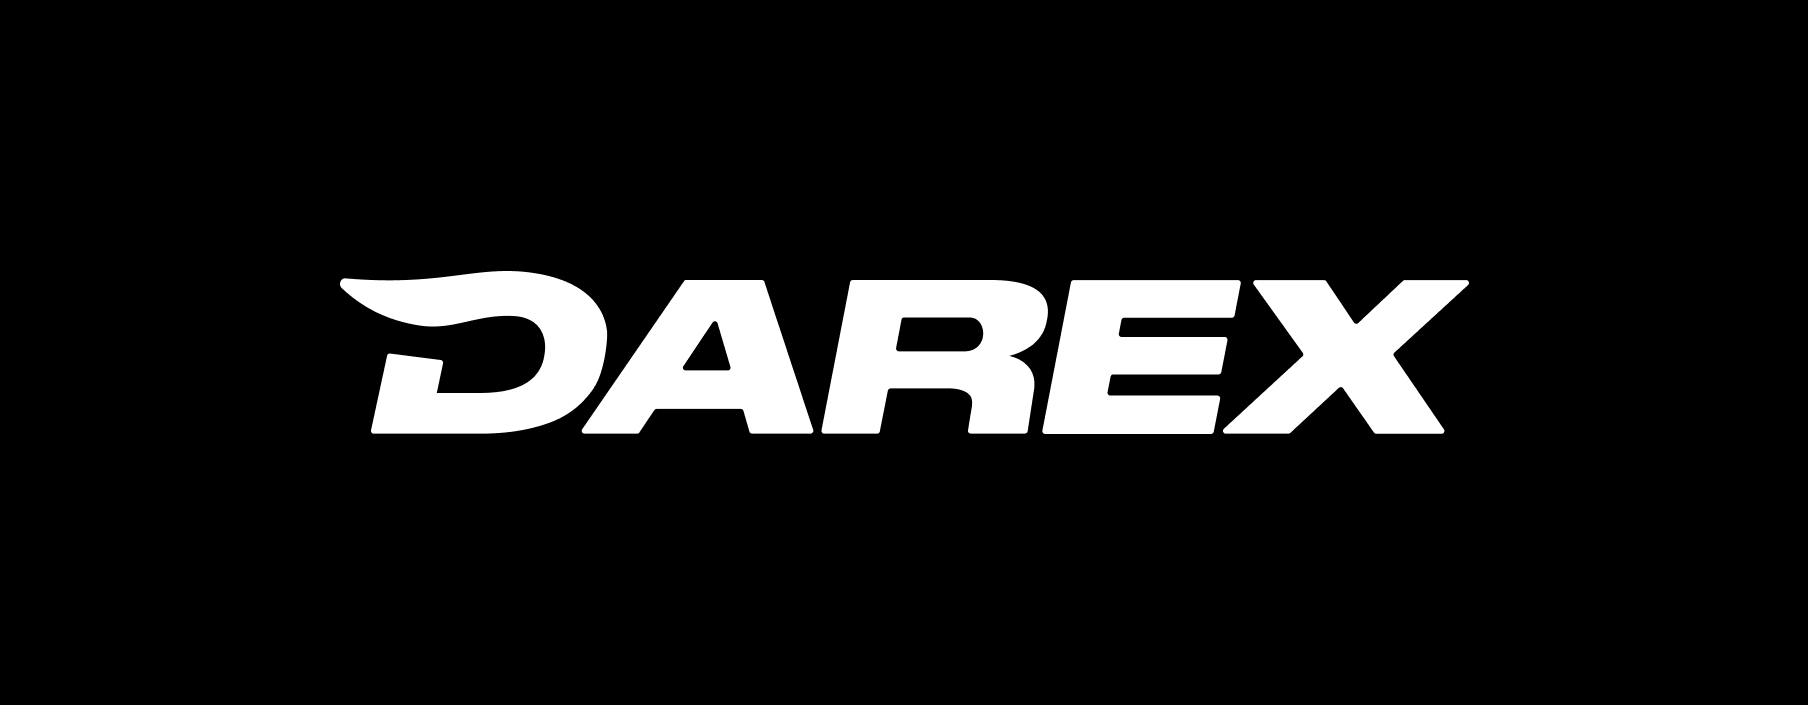 Darex: отзывы от сотрудников и партнеров